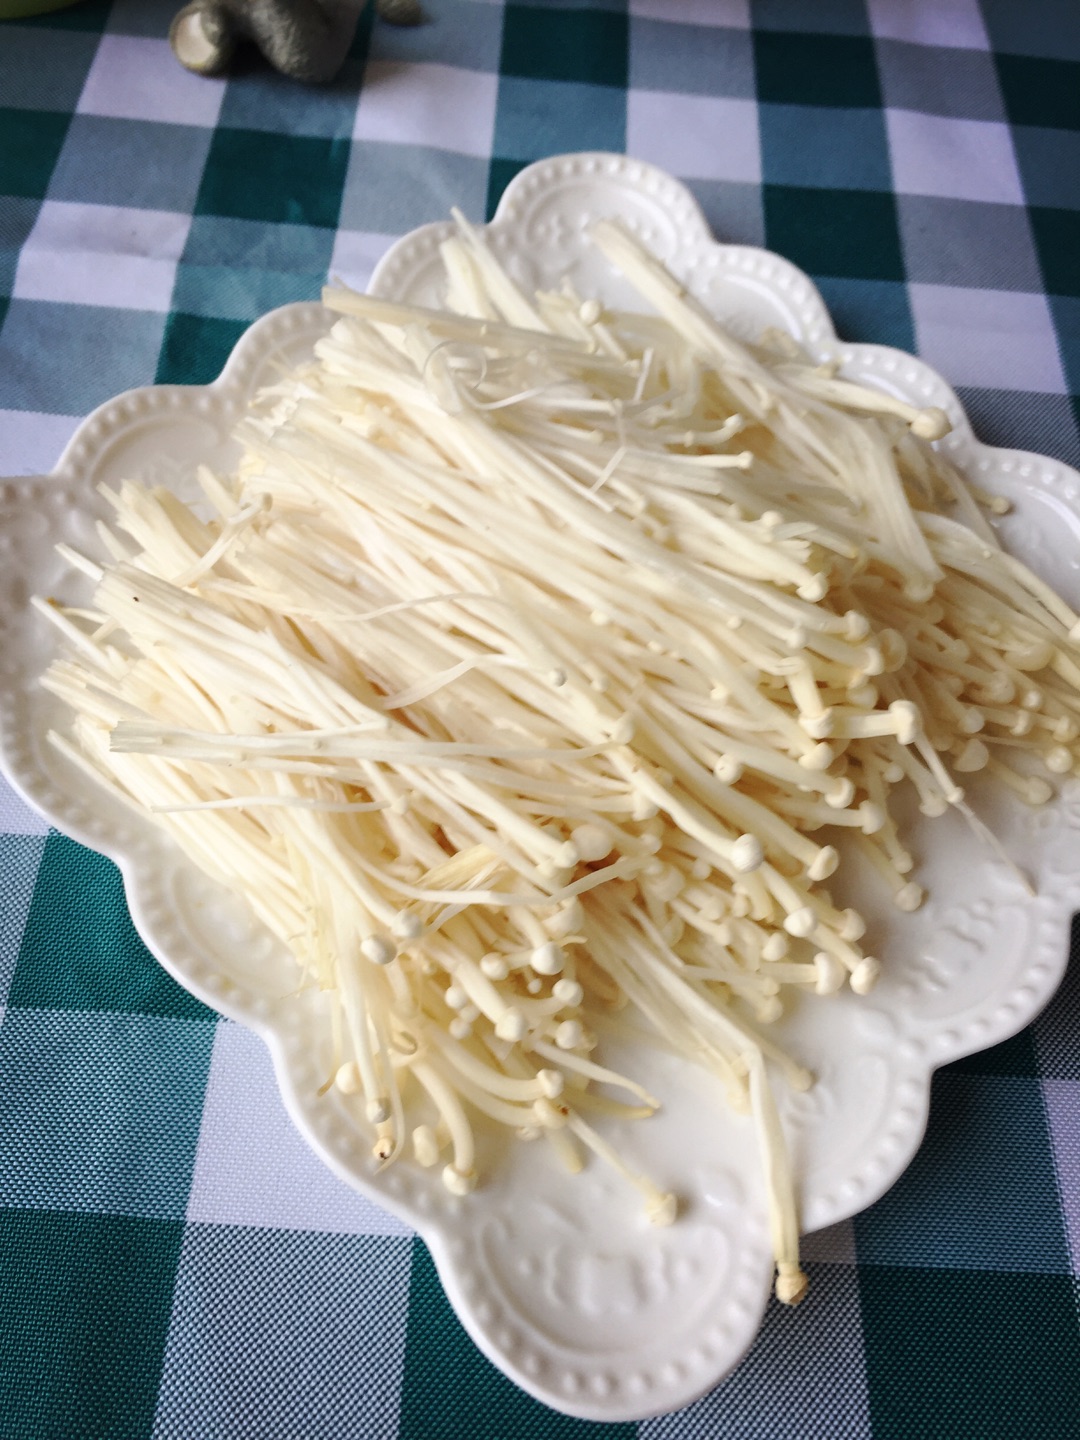 蒜蓉金针菇的做法_蒜蓉金针菇怎么做_蒜蓉金针菇的家常做法_施肥。【心食谱】